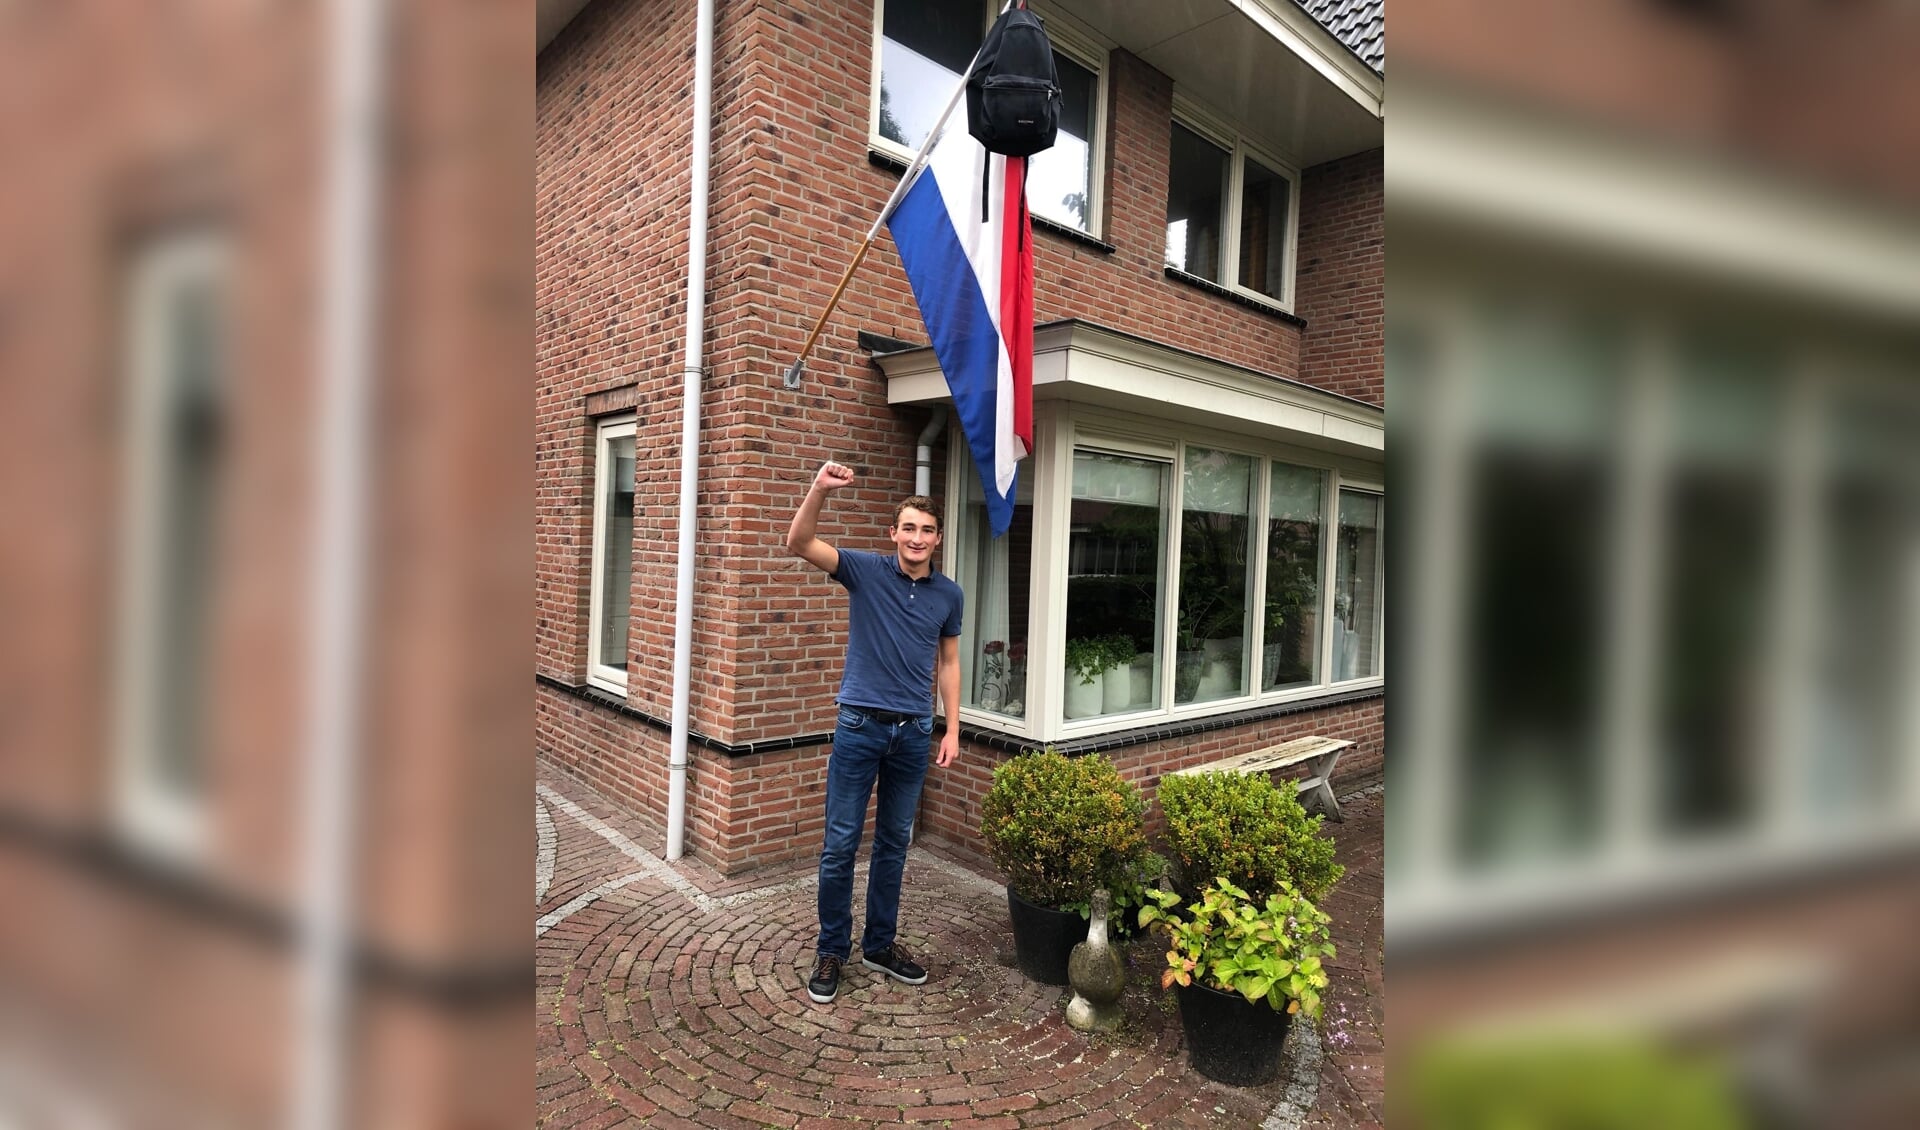 Vorige jaar partycrashde de verslaggever nog bij een aantal geslaagde jongeren waar de vlag uithing, zo ook bij Thijs. 